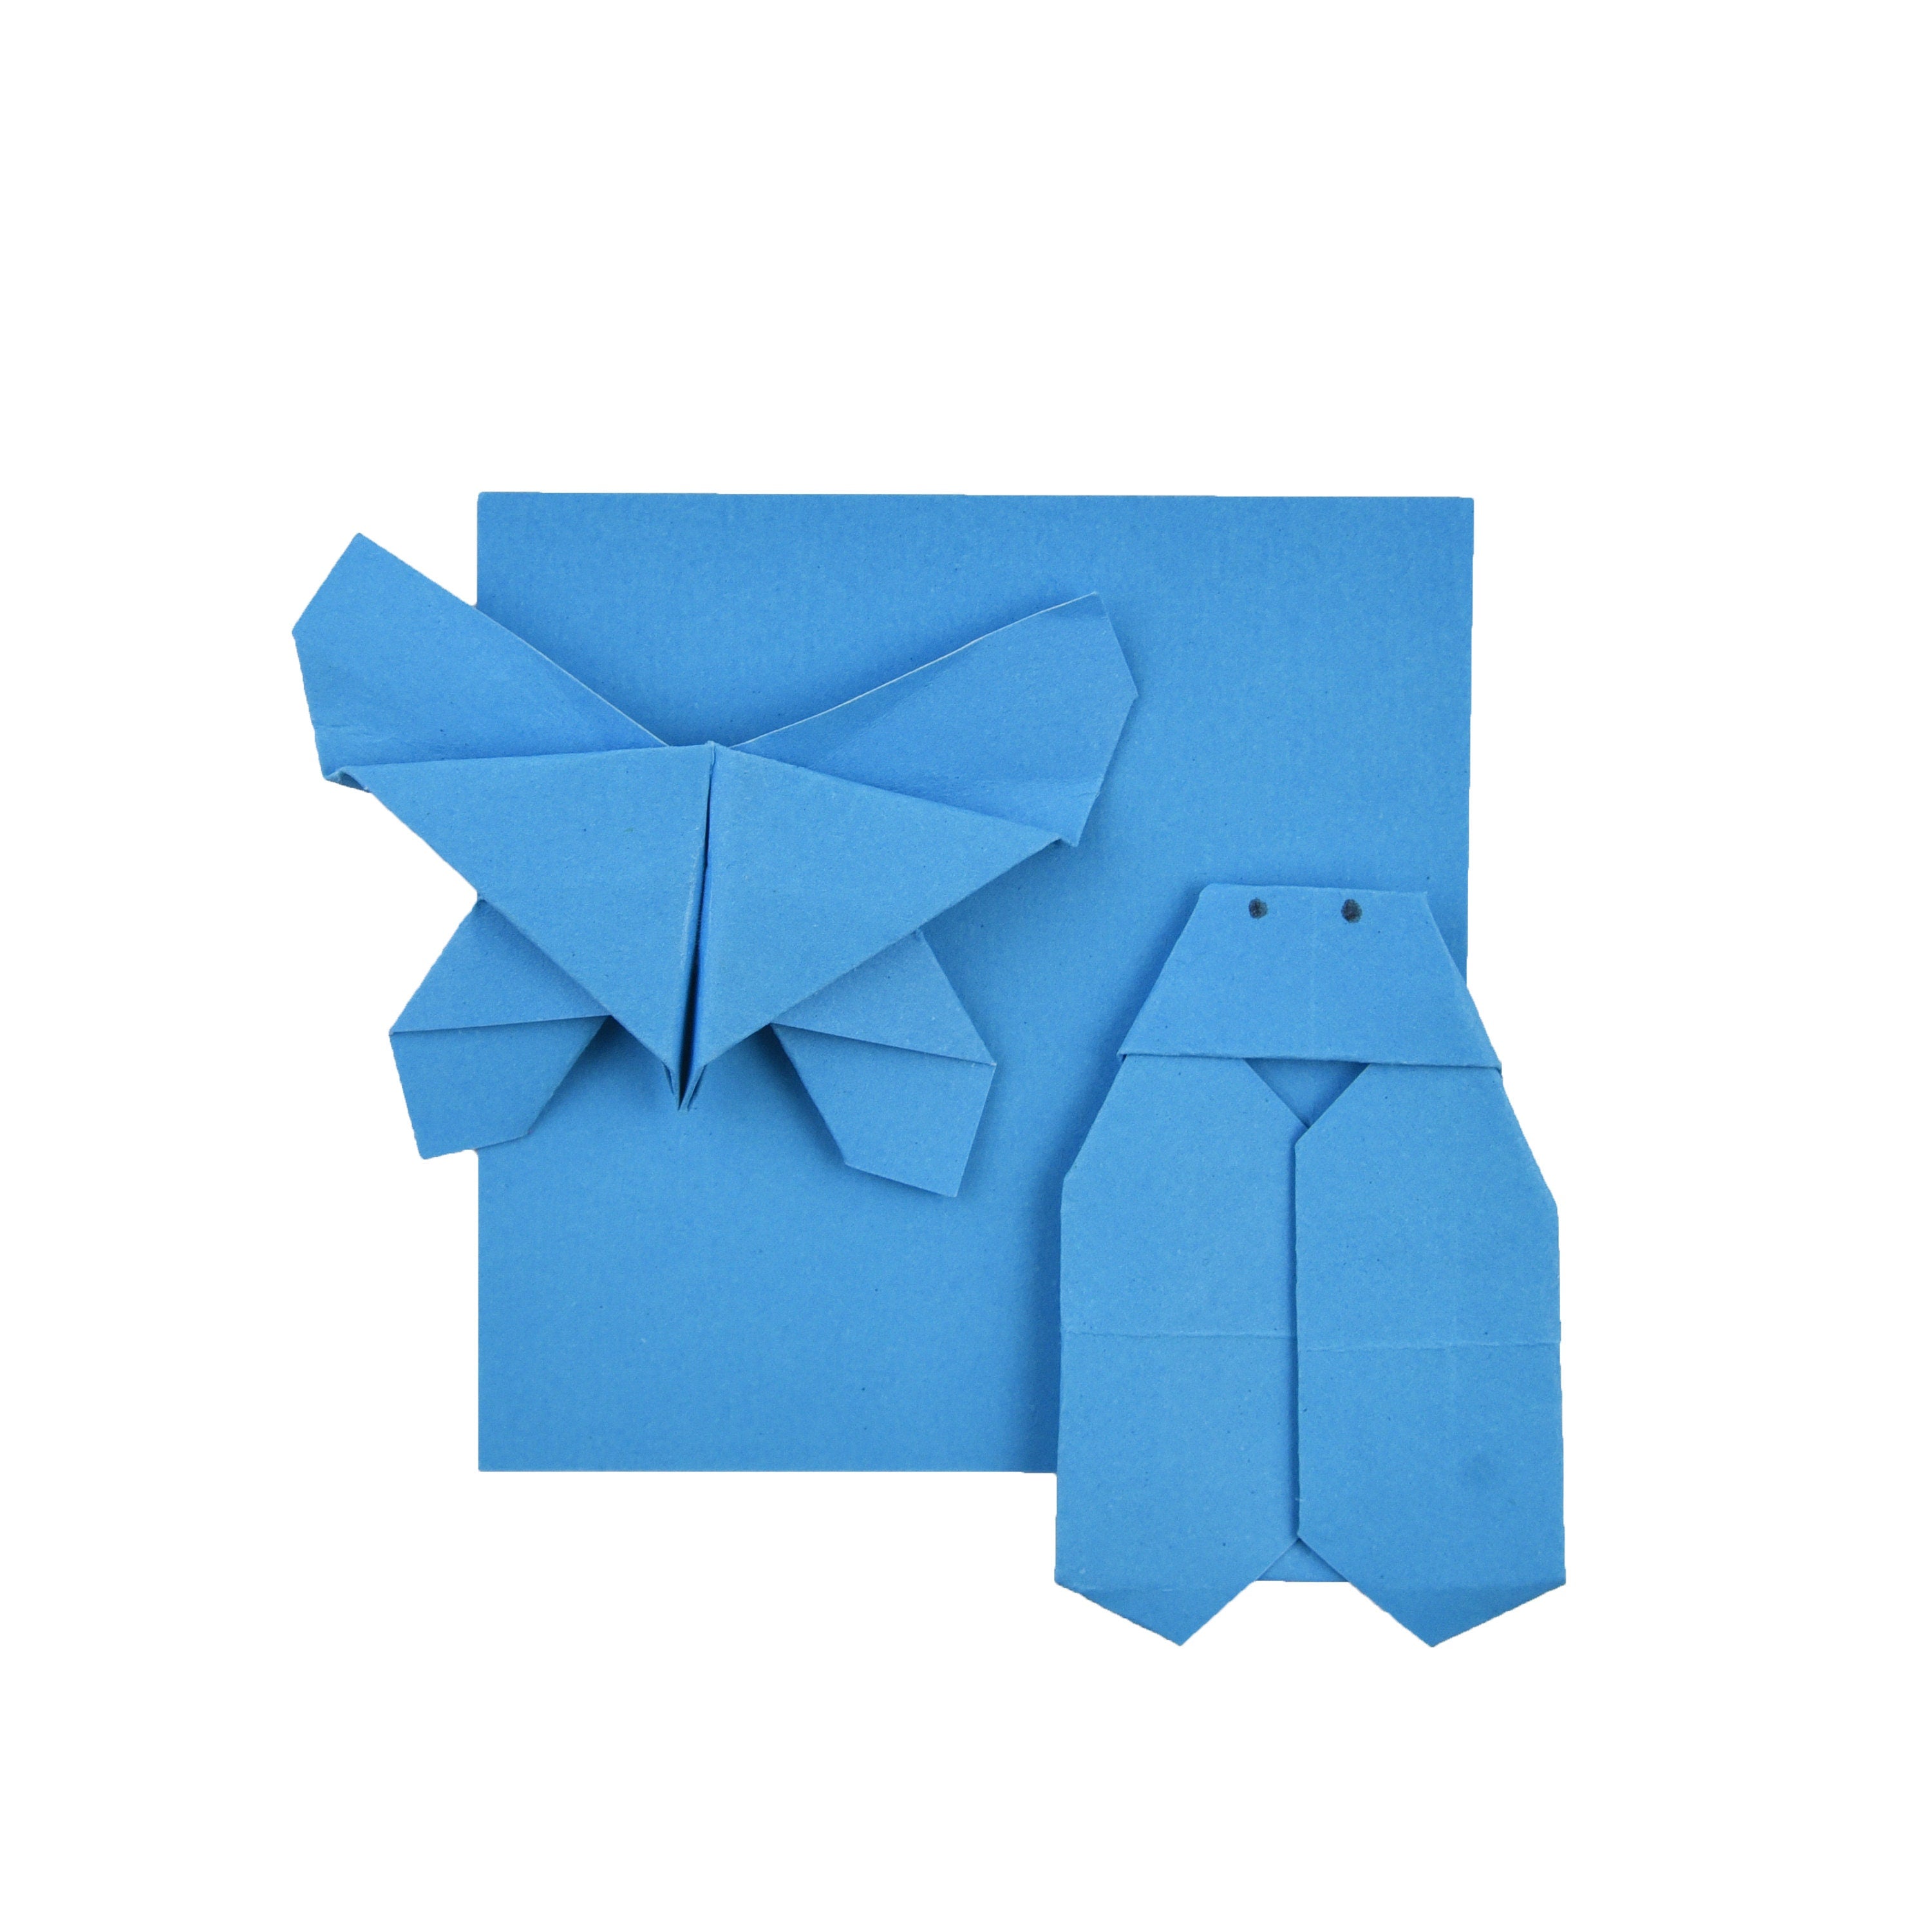 100 Hojas de Papel Origami - 6x6 pulgadas - Paquete de Papel Cuadrado para Plegar, Grullas de Origami y Decoración - S18